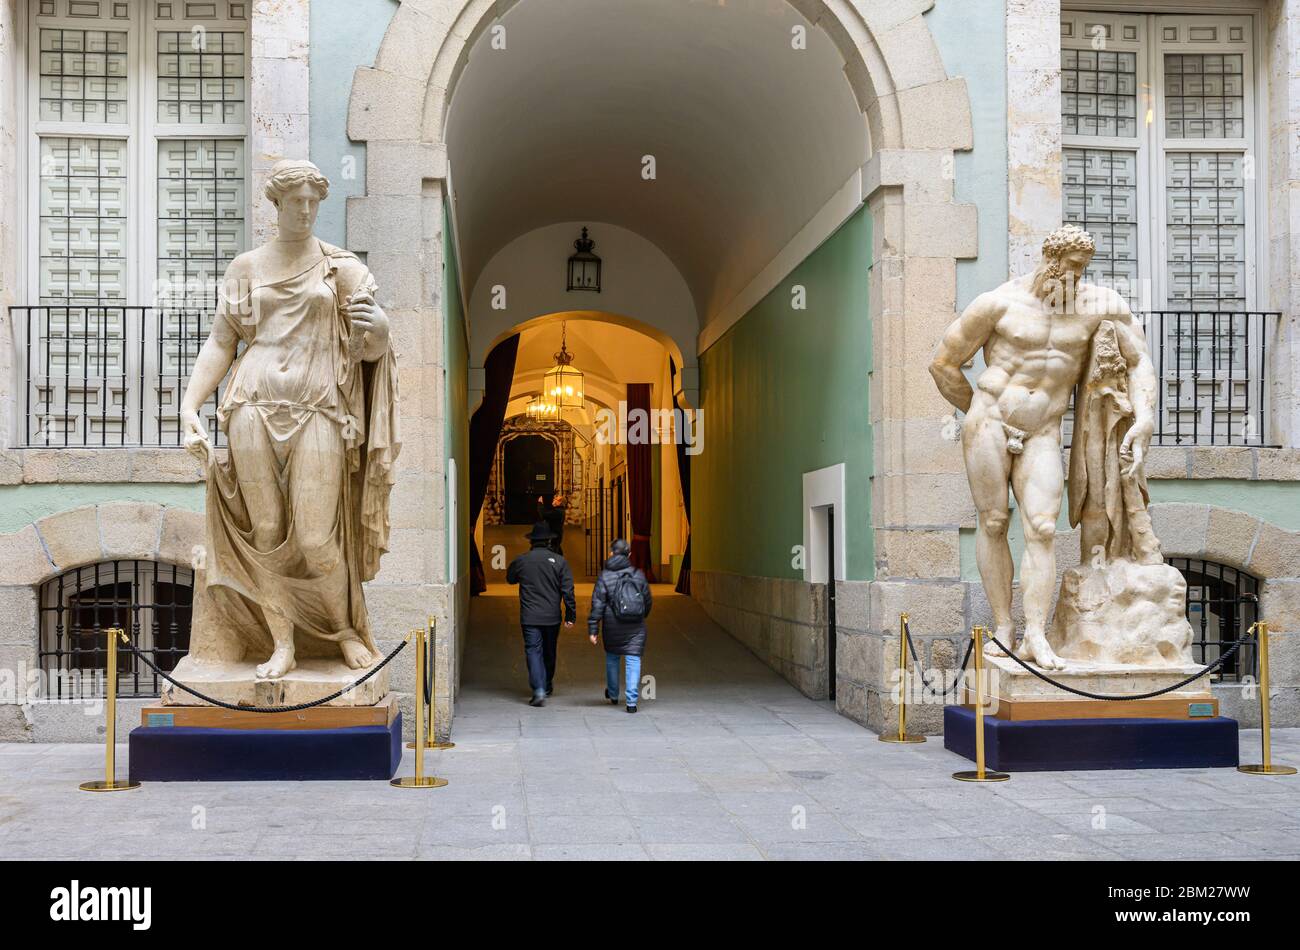 Copie di antiche statue greche e romane nel cortile interno dell'Accademia reale di Belle Arti di San Fernando, Madrid, Spagna, Foto Stock